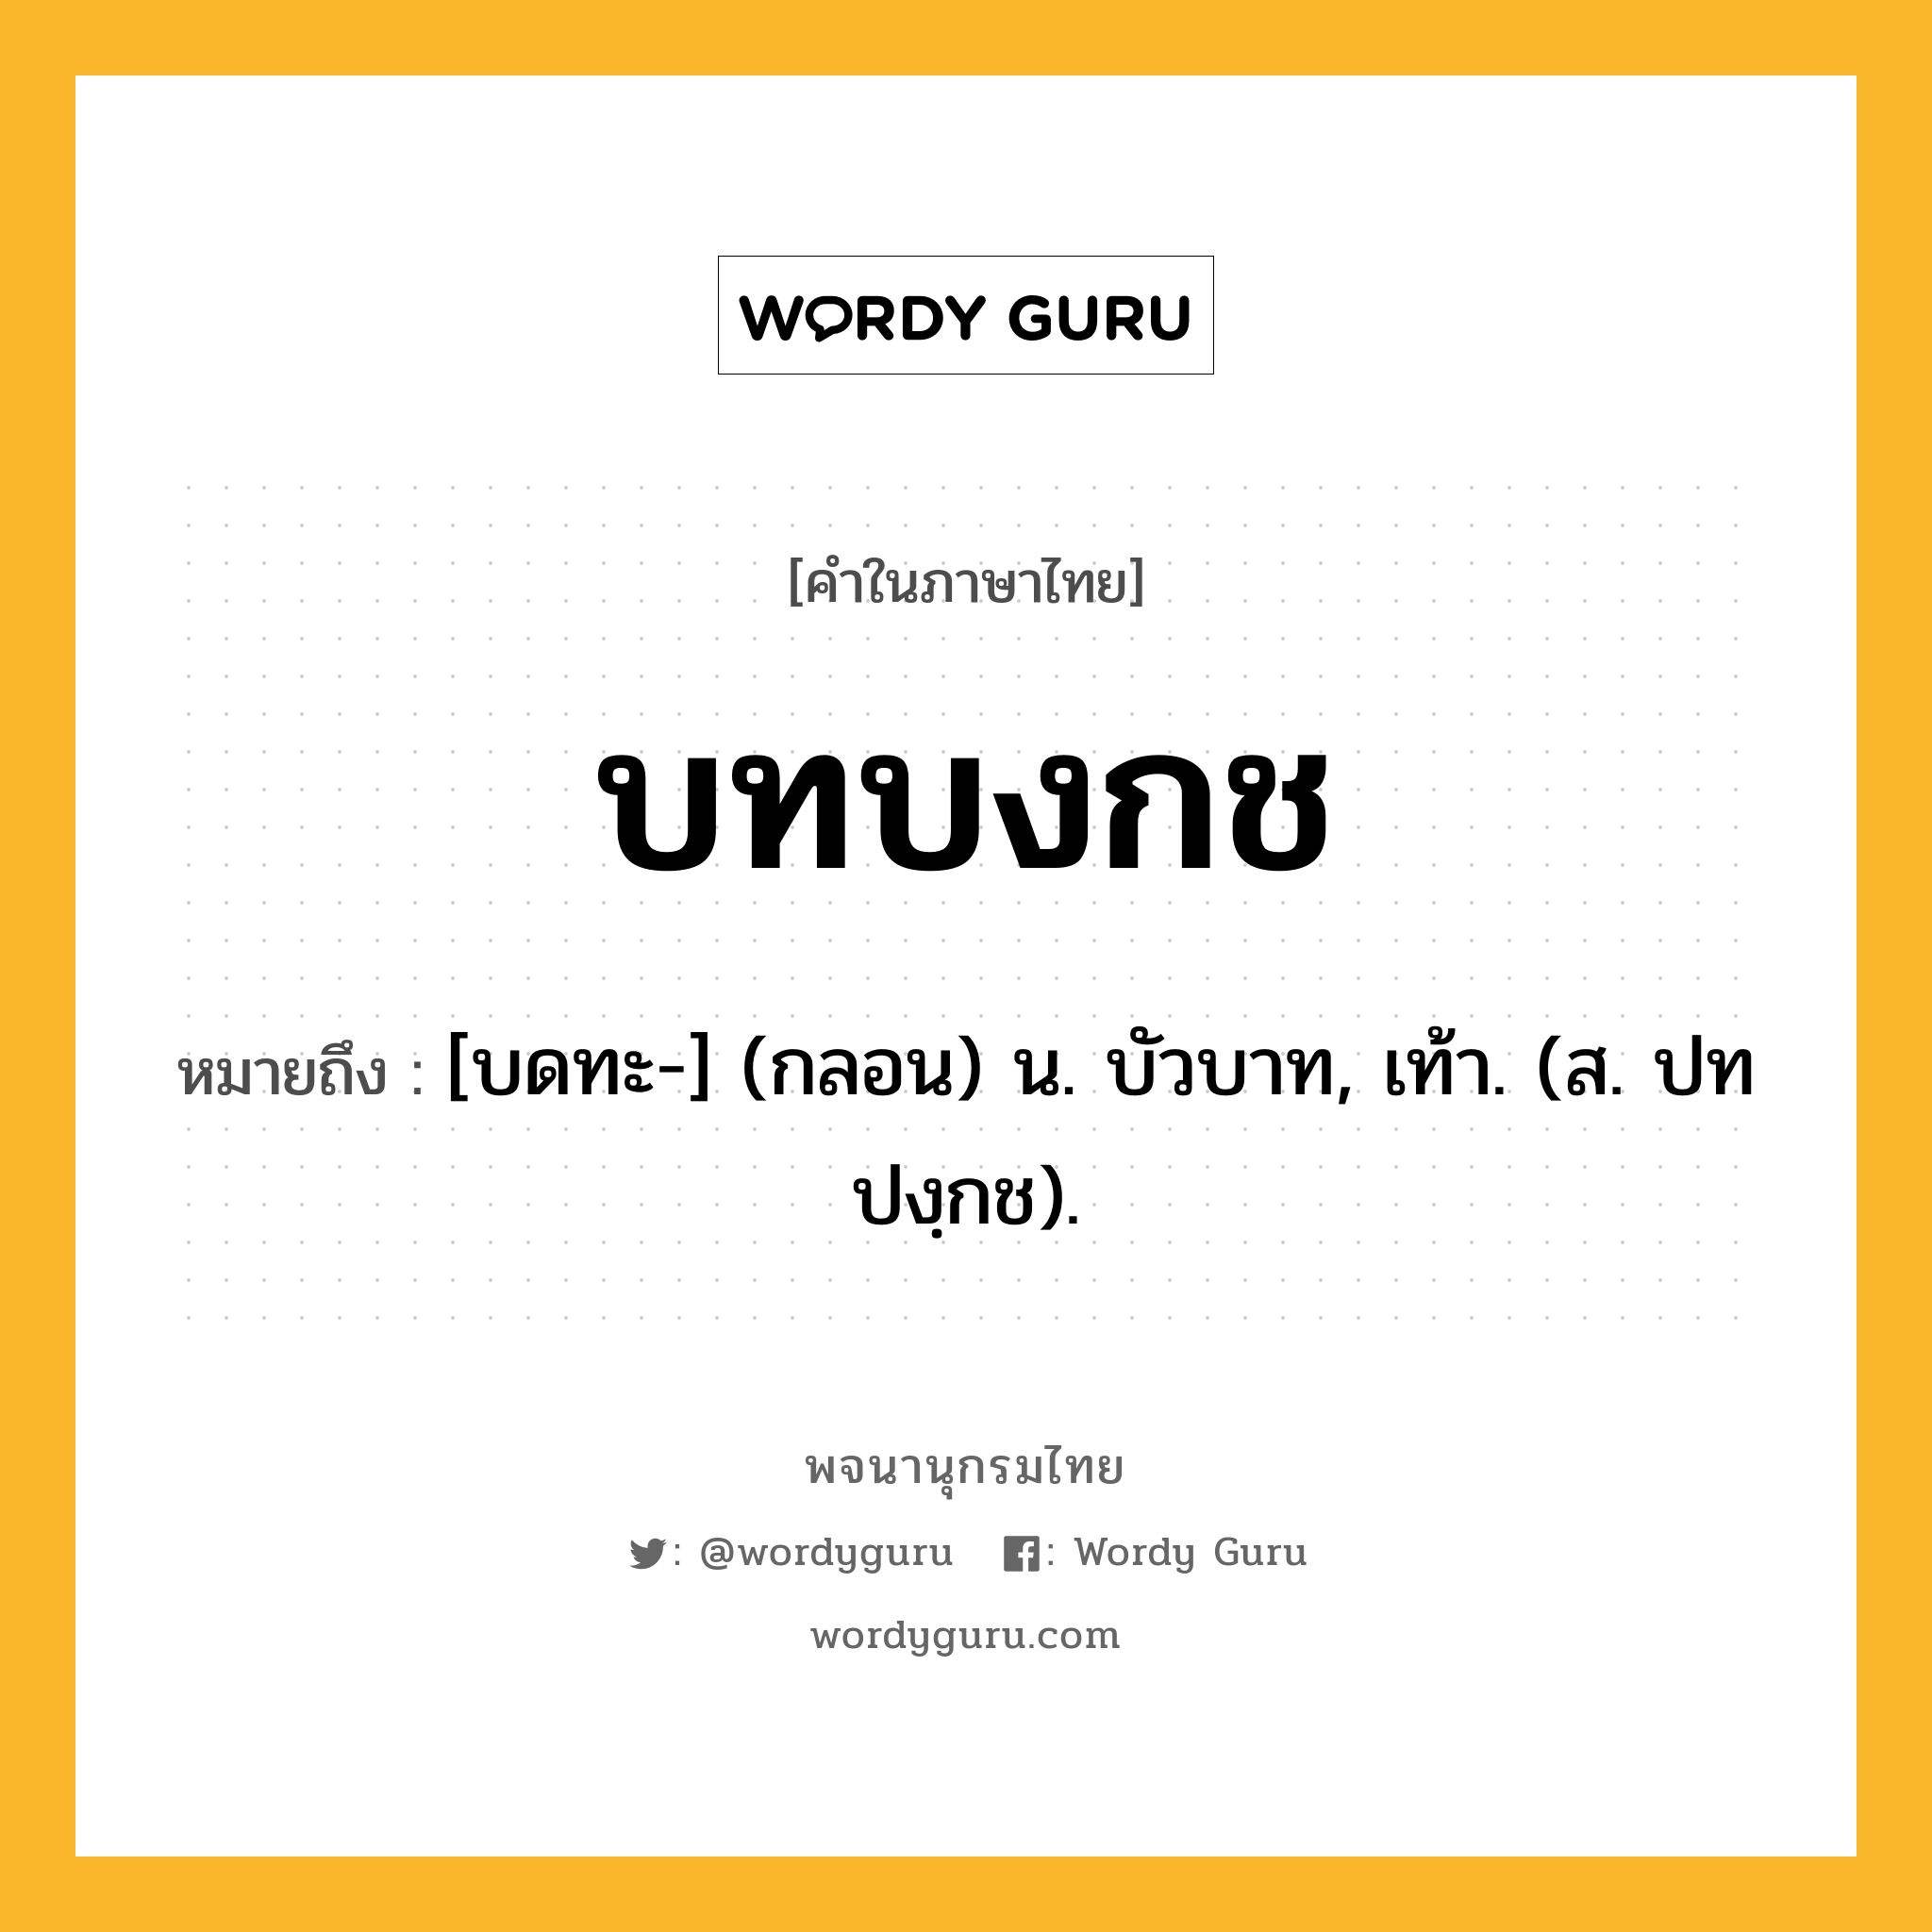 บทบงกช ความหมาย หมายถึงอะไร?, คำในภาษาไทย บทบงกช หมายถึง [บดทะ-] (กลอน) น. บัวบาท, เท้า. (ส. ปทปงฺกช).